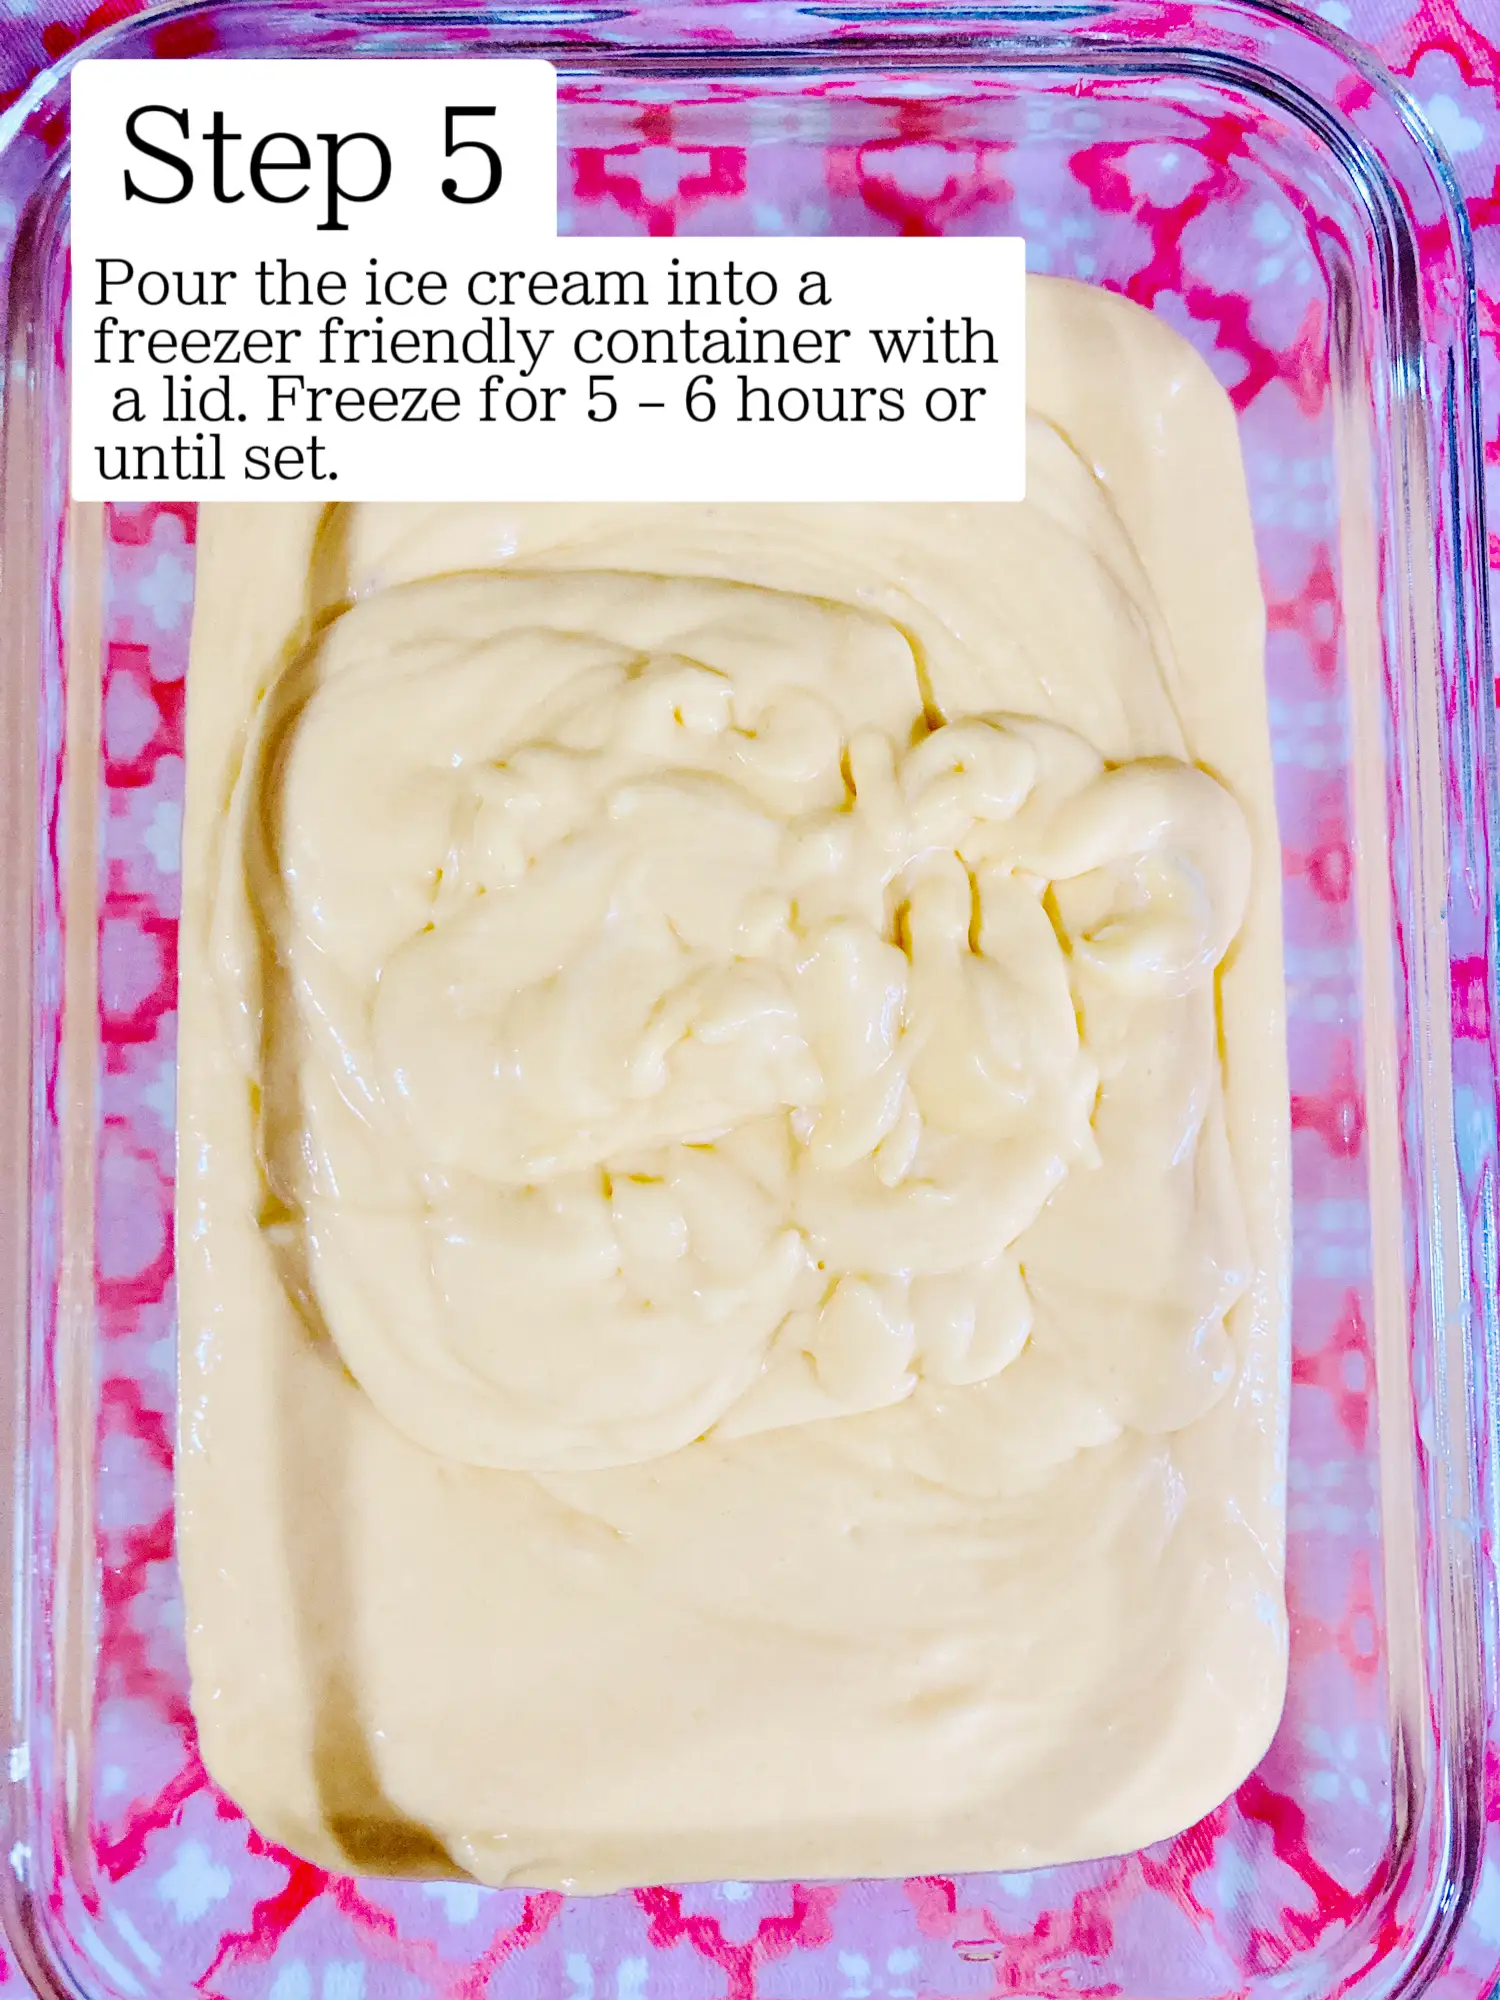 Frolic Ice Cream Machine Makes Frozen Desserts in Just 2 Minutes